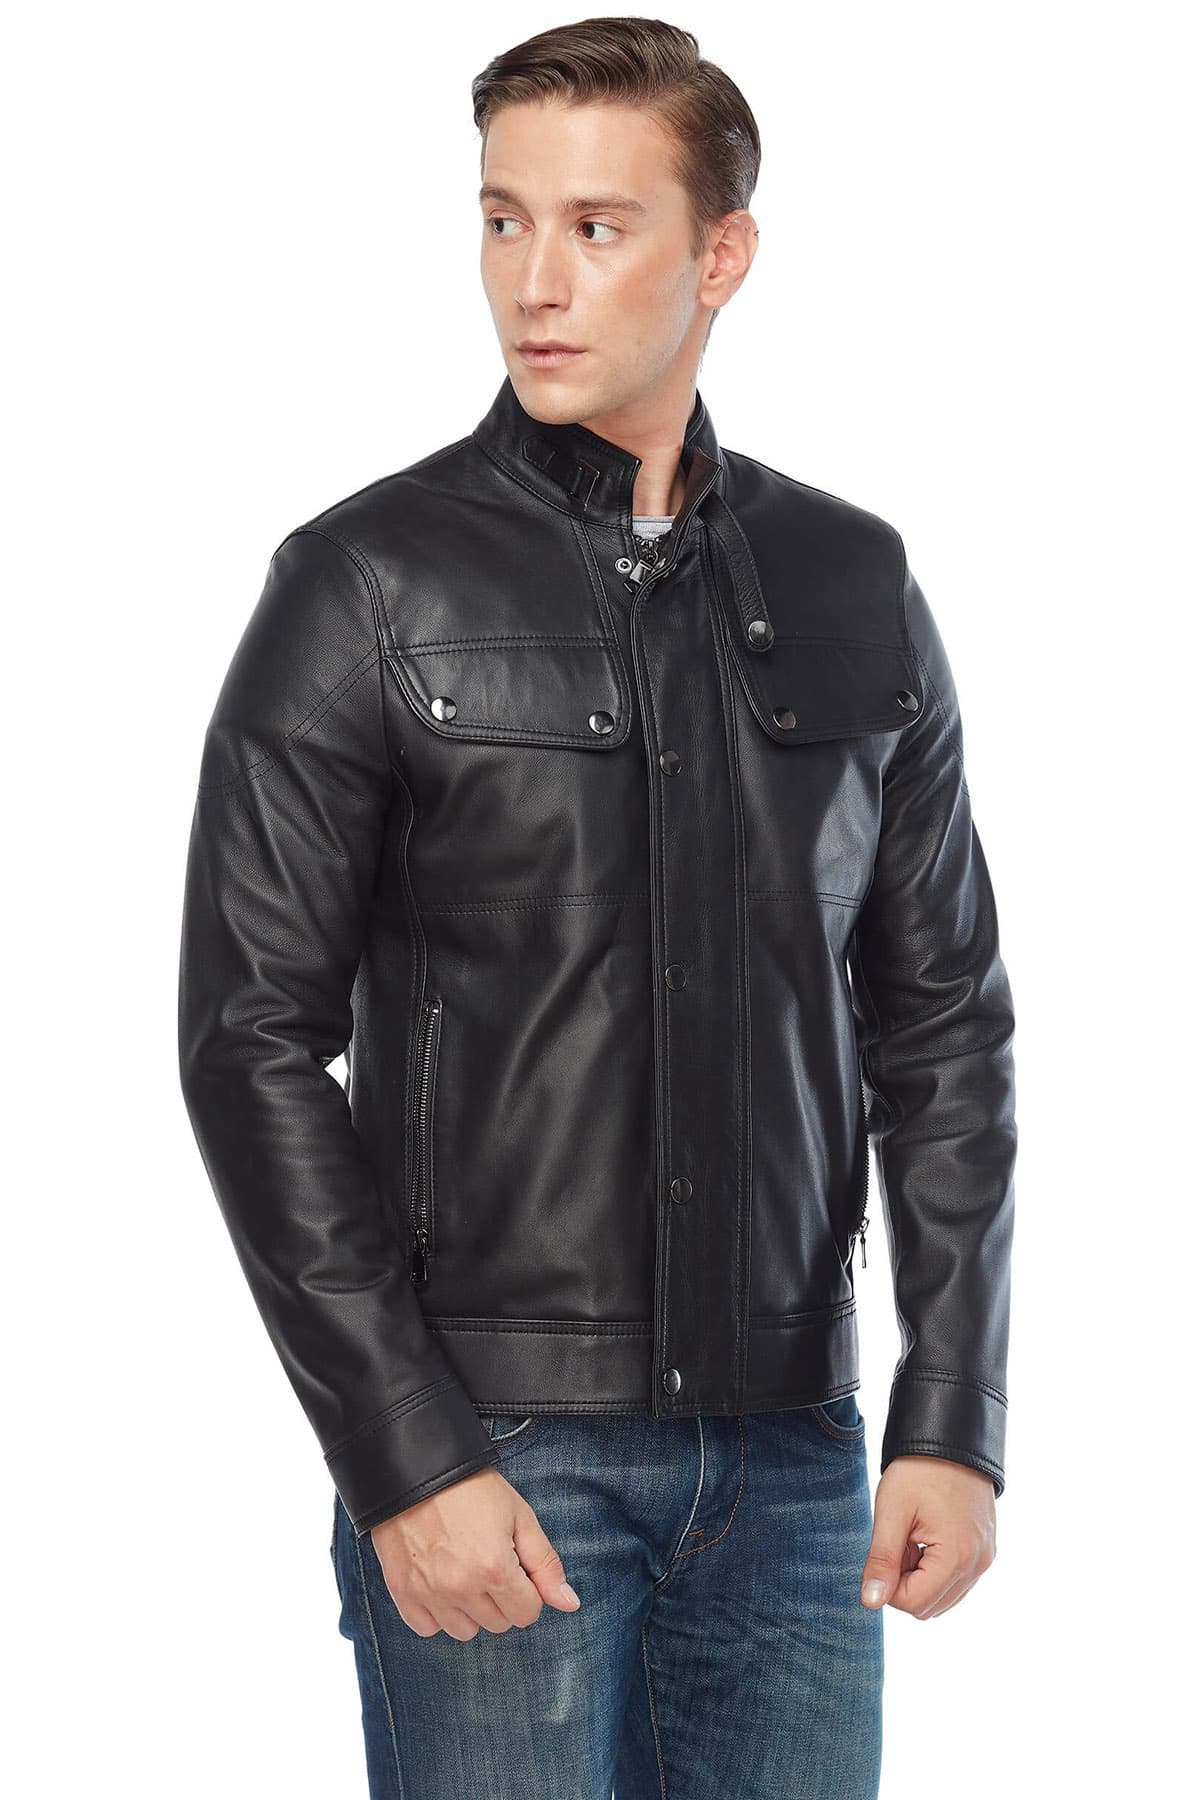 David Beckham Men's 100 % Real Black Leather Jacket